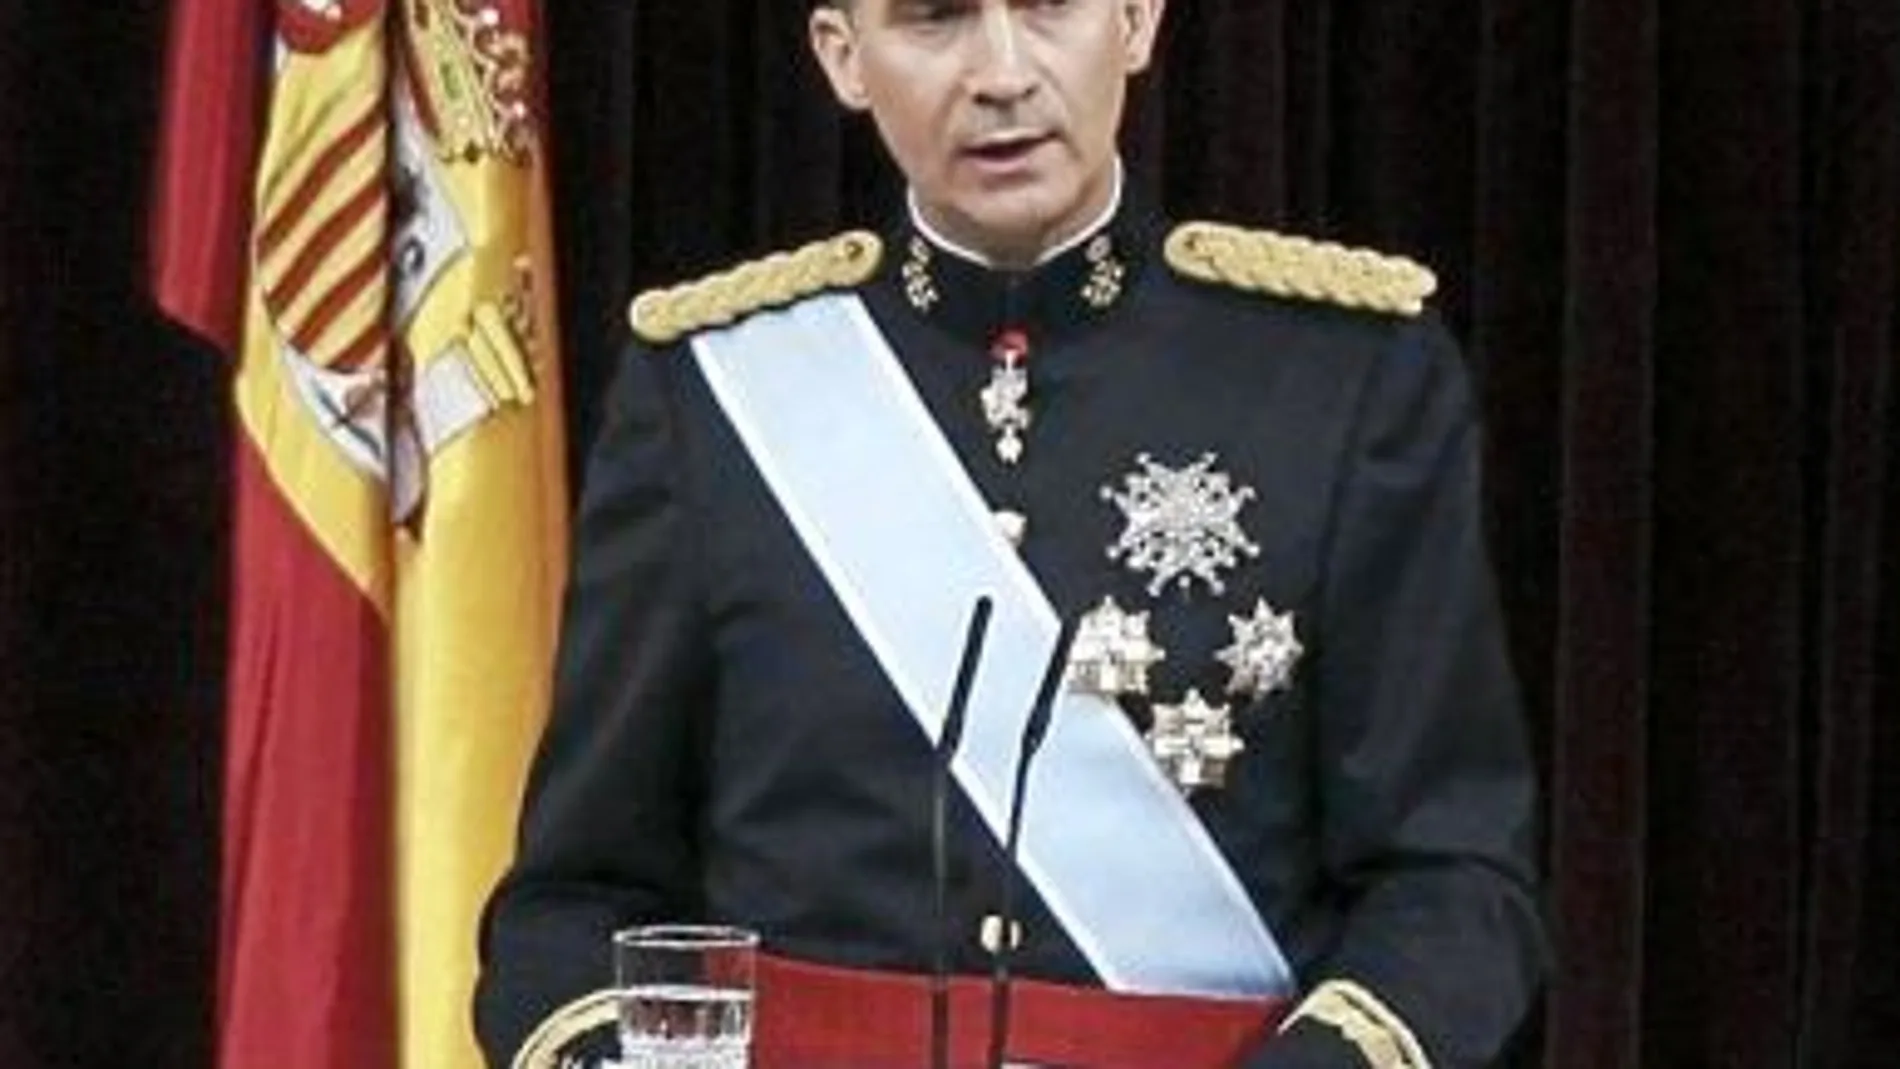 Don Felipe VI jura la Constitución el 19 de junio de 2014 en el Congreso